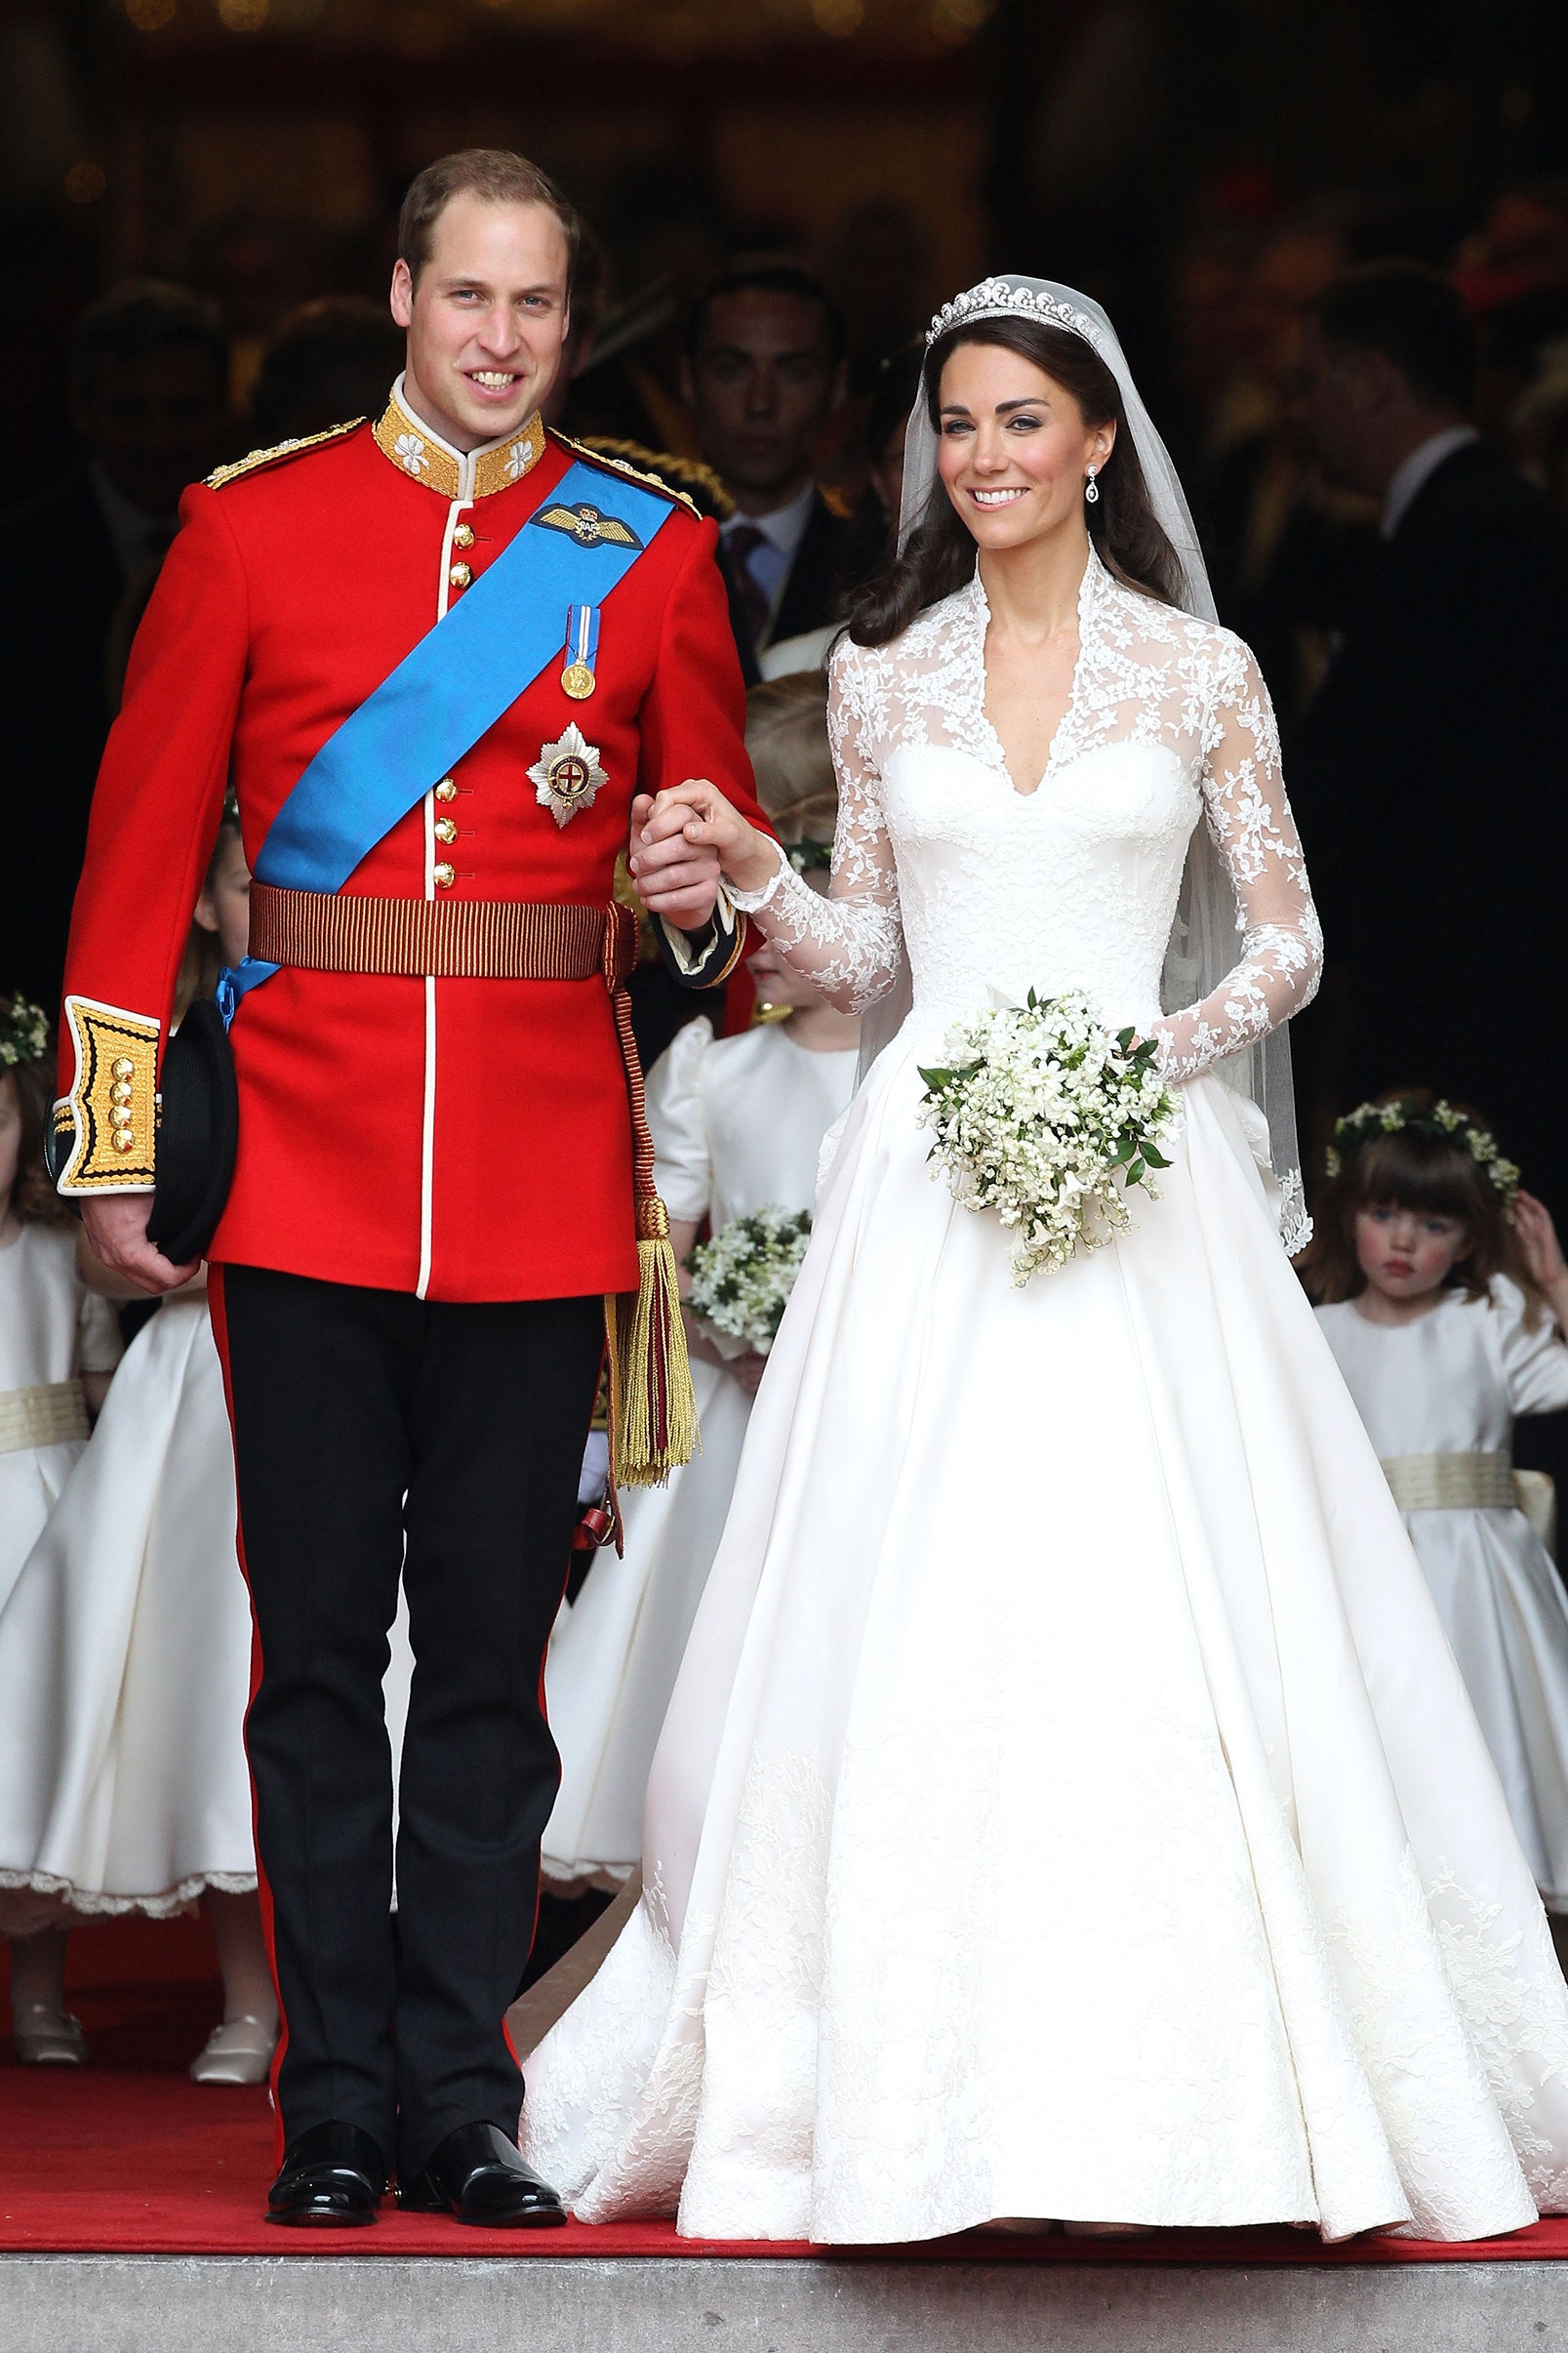 Кейт Миддлтон и принц Уильям отмечают годовщину свадьбы 29 апреля фото лучших выходов пары | Vogue